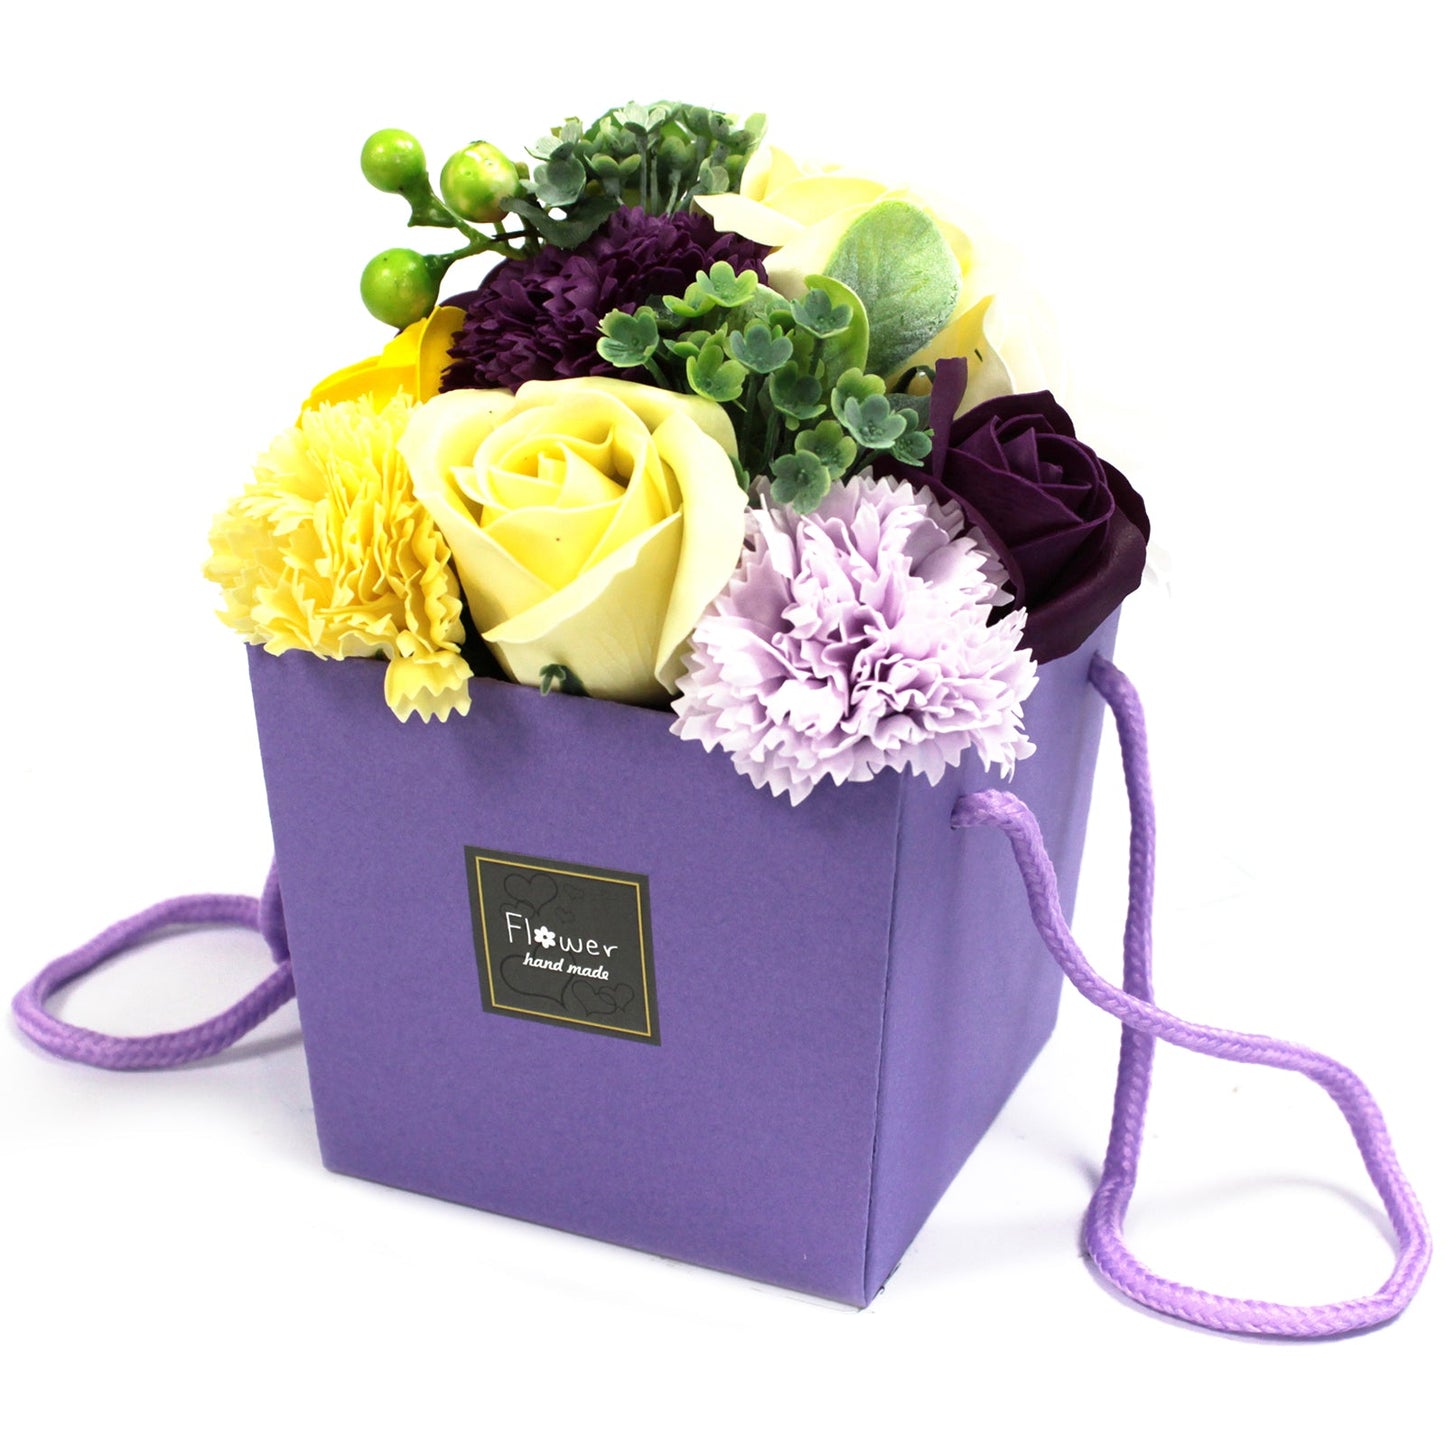 Soap Flower Bouquet in Box Soap Flowers Soul Inspired Purple Flower Garden 